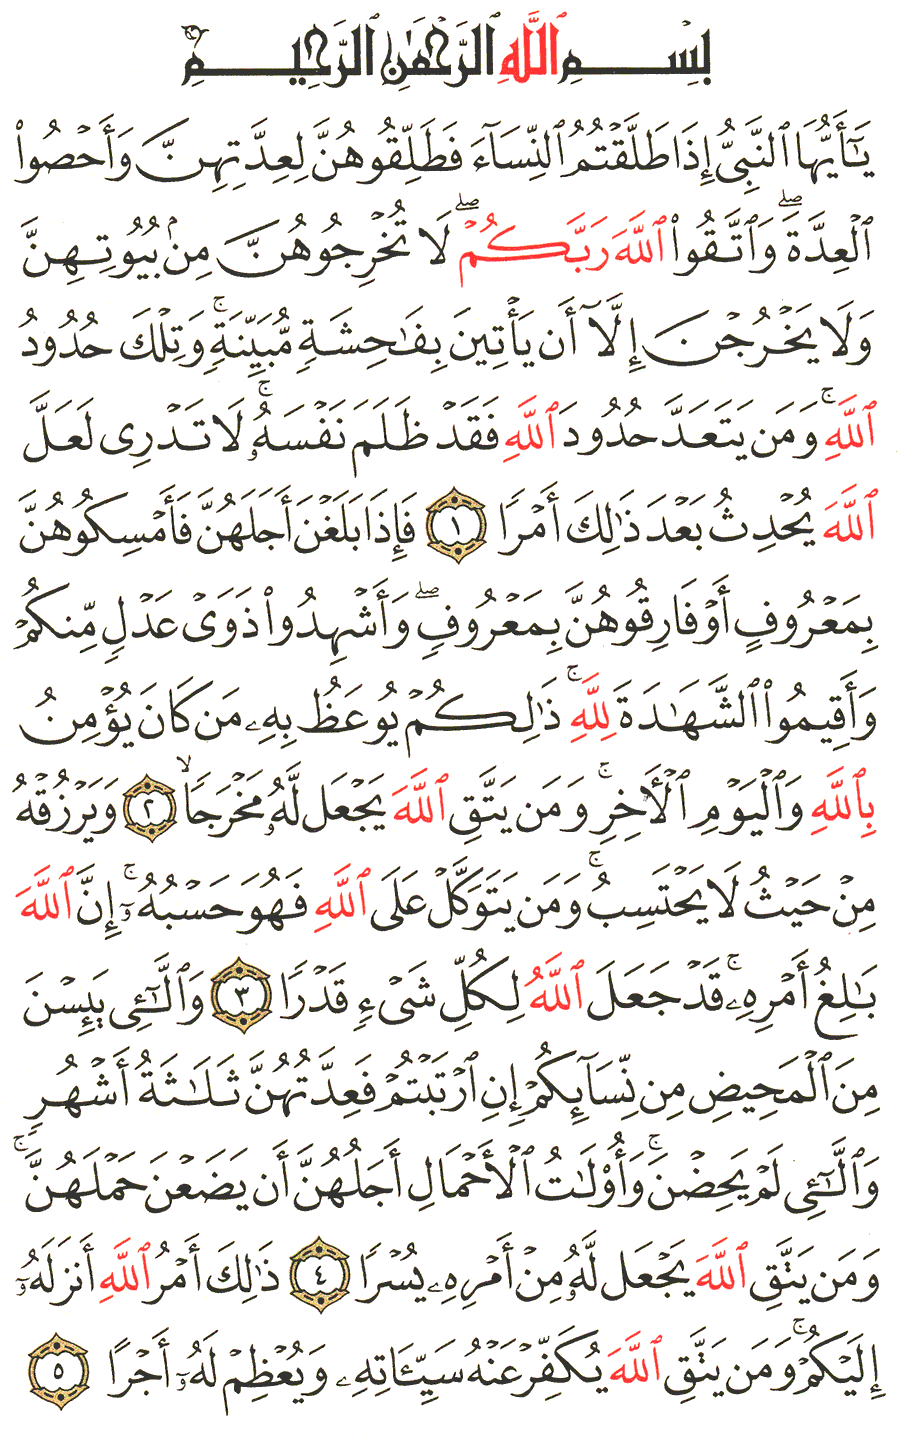 الصفحة رقم 558 من القرآن الكريم مكتوبة من المصحف